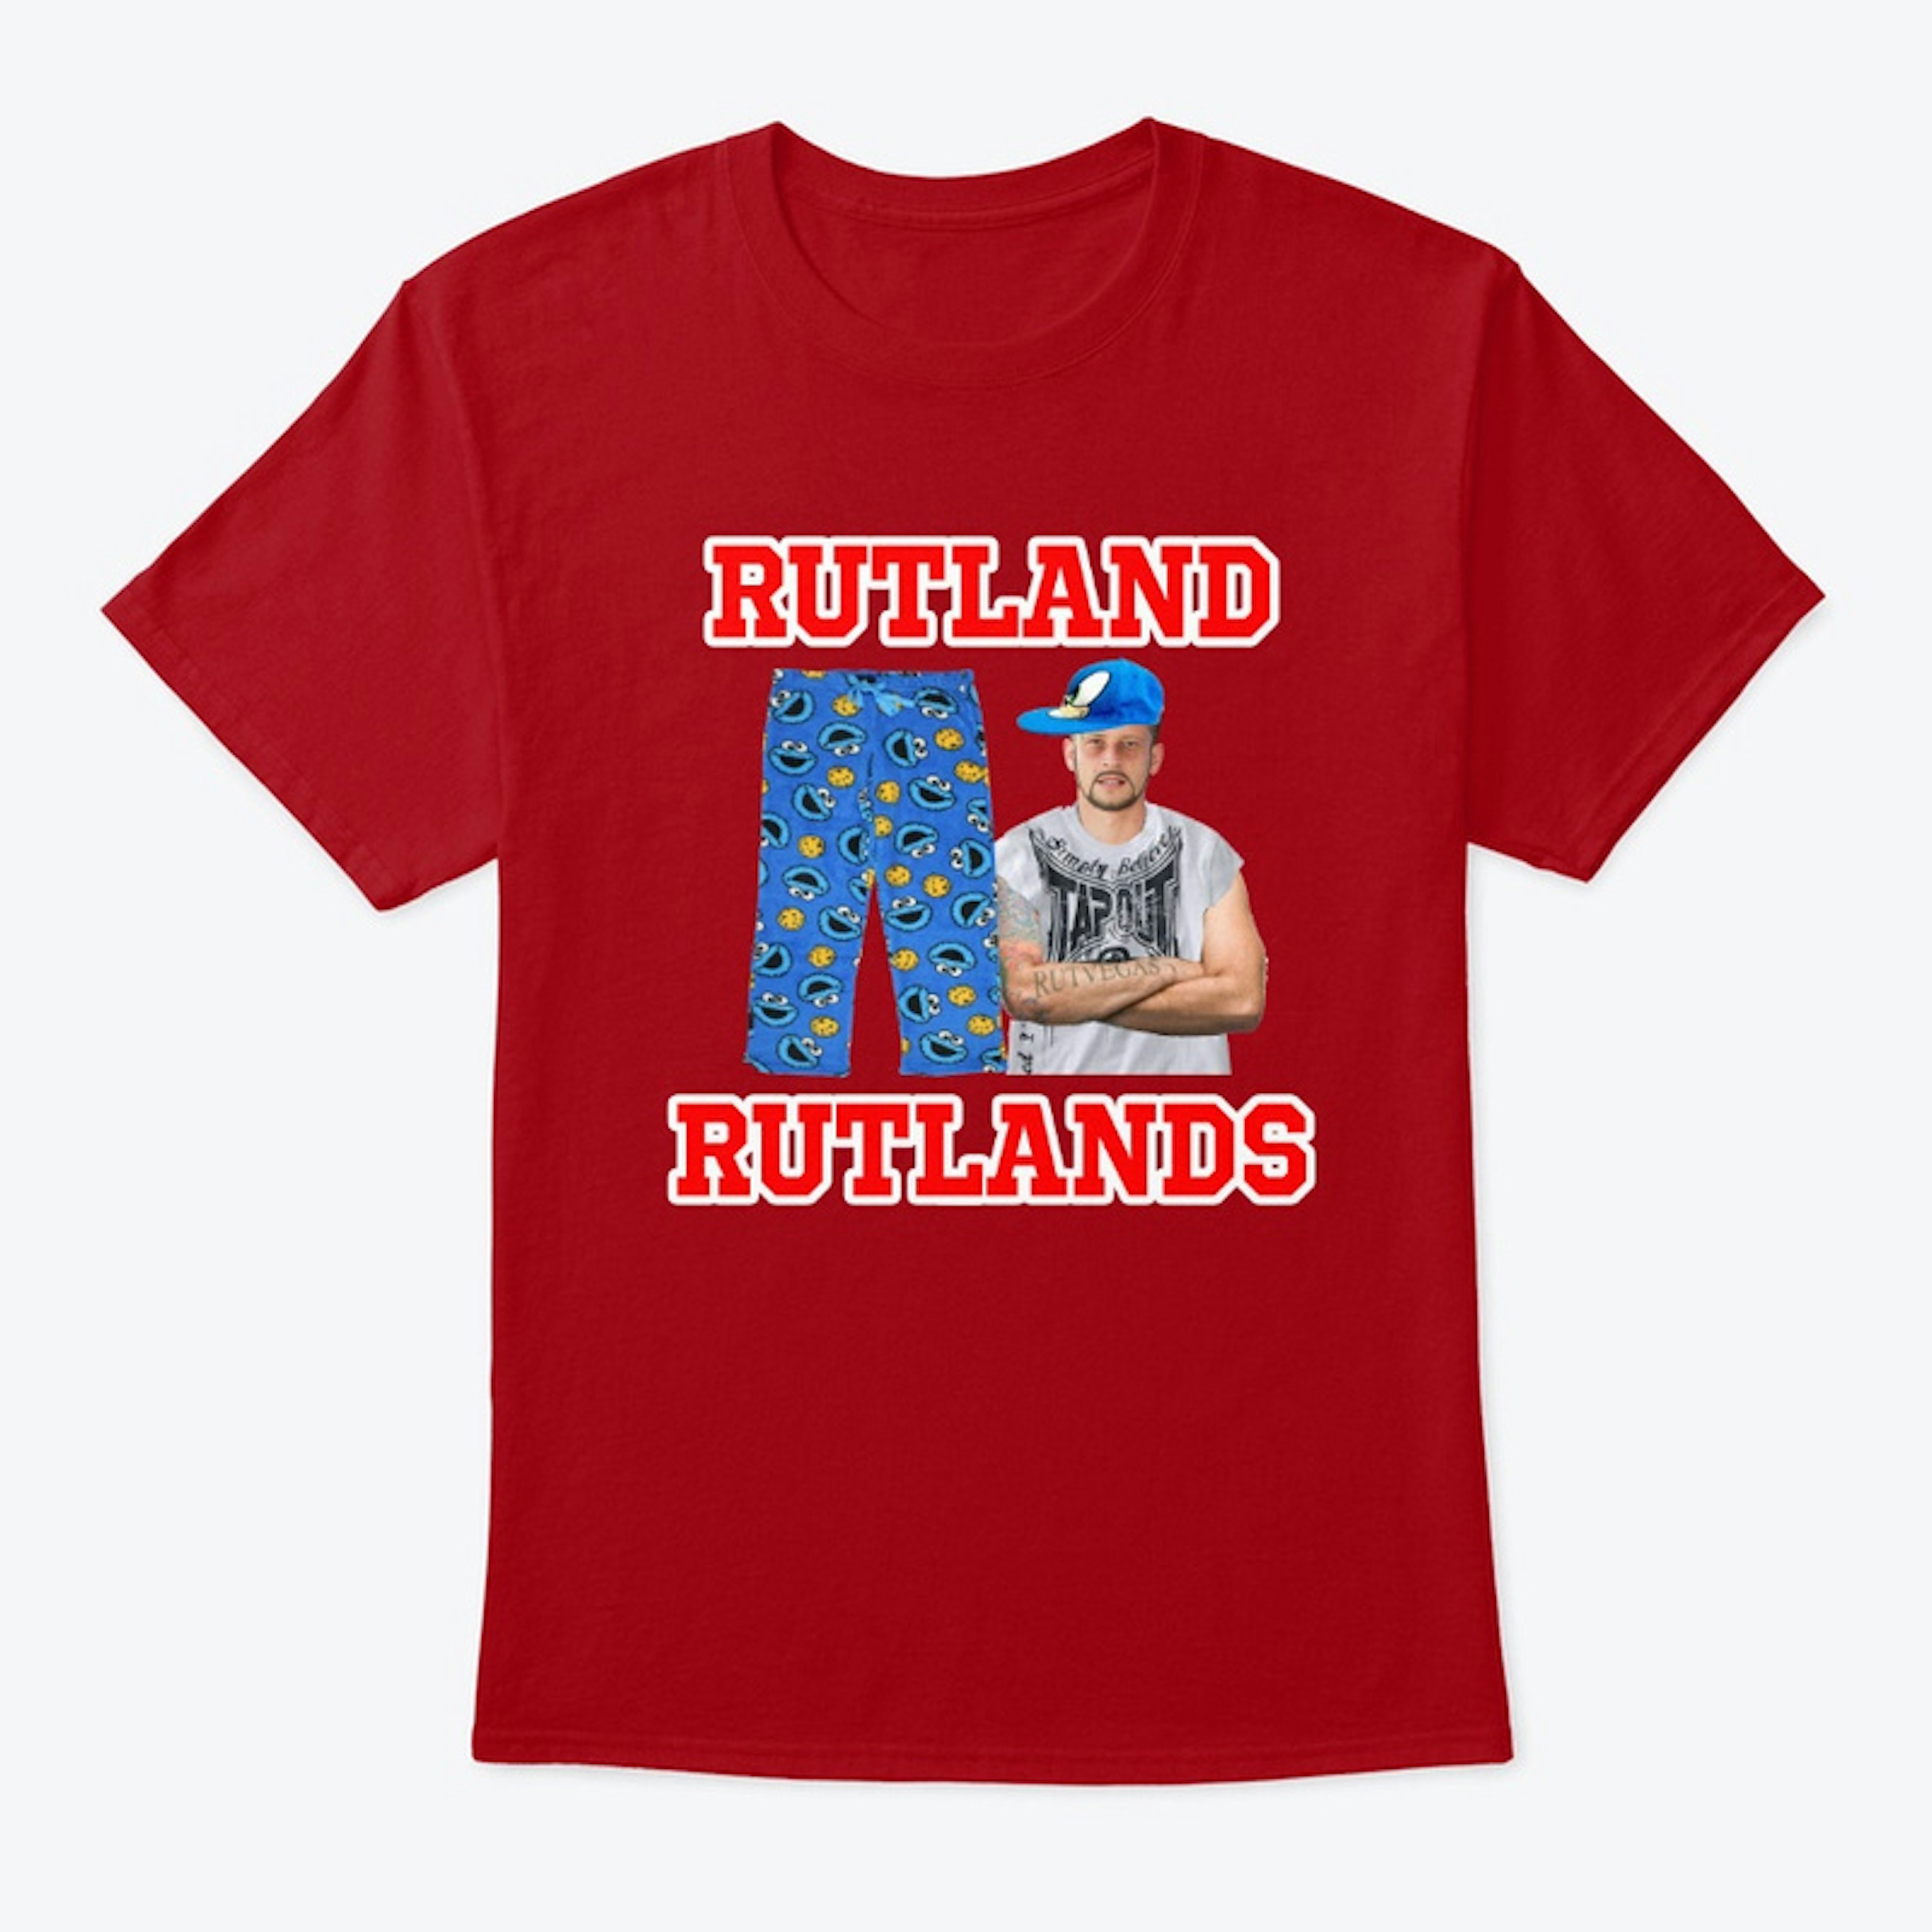 RUTLAND RUTLANDS - COOKIE MONSTER PJS